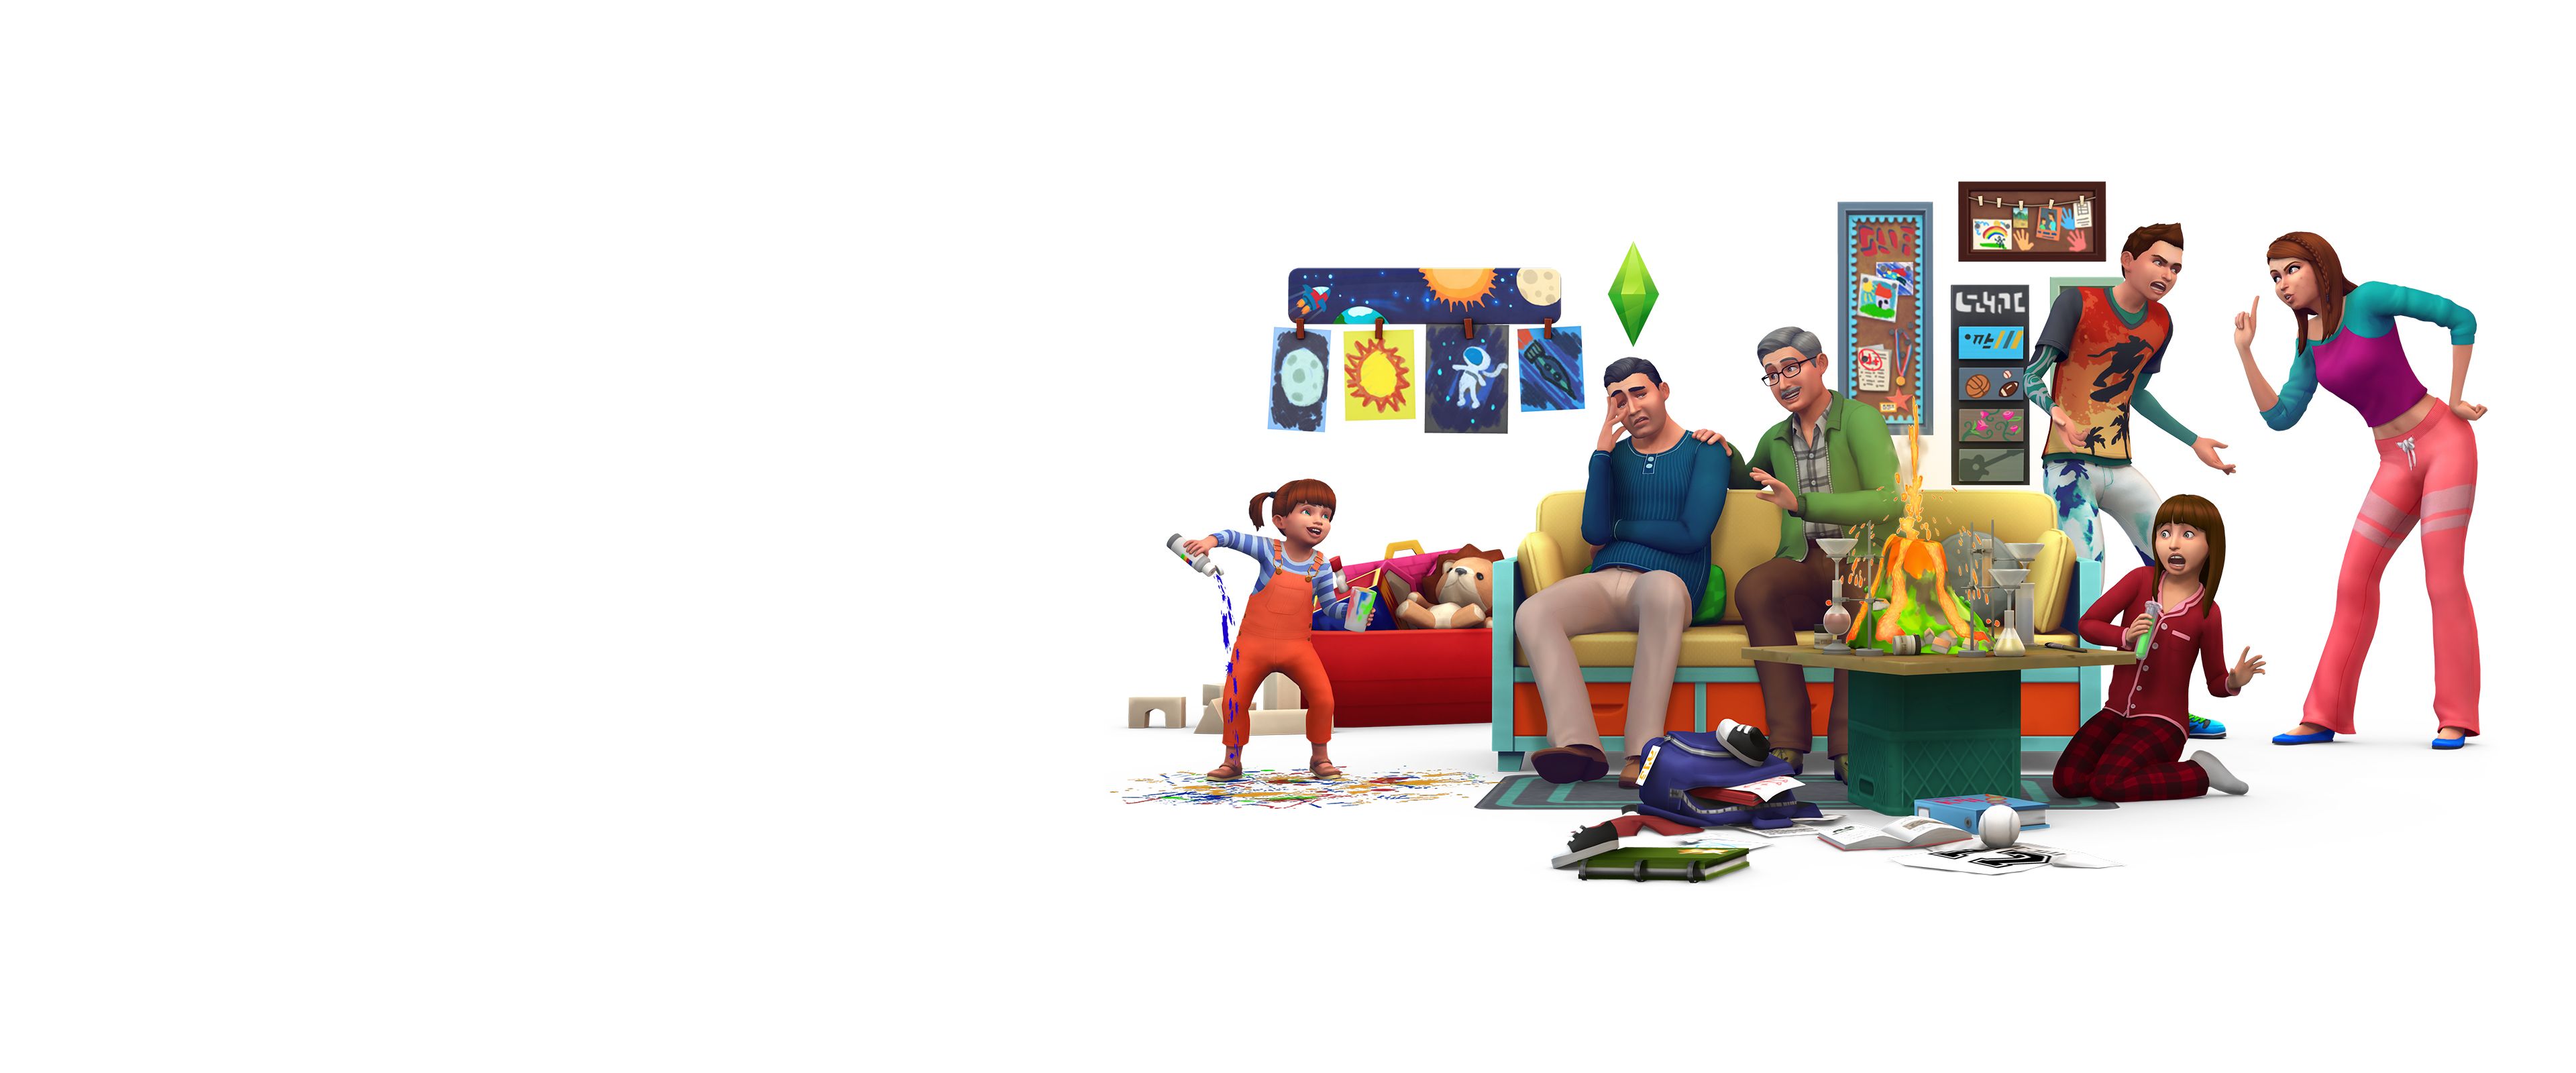 sims 4 parenthood free download mac